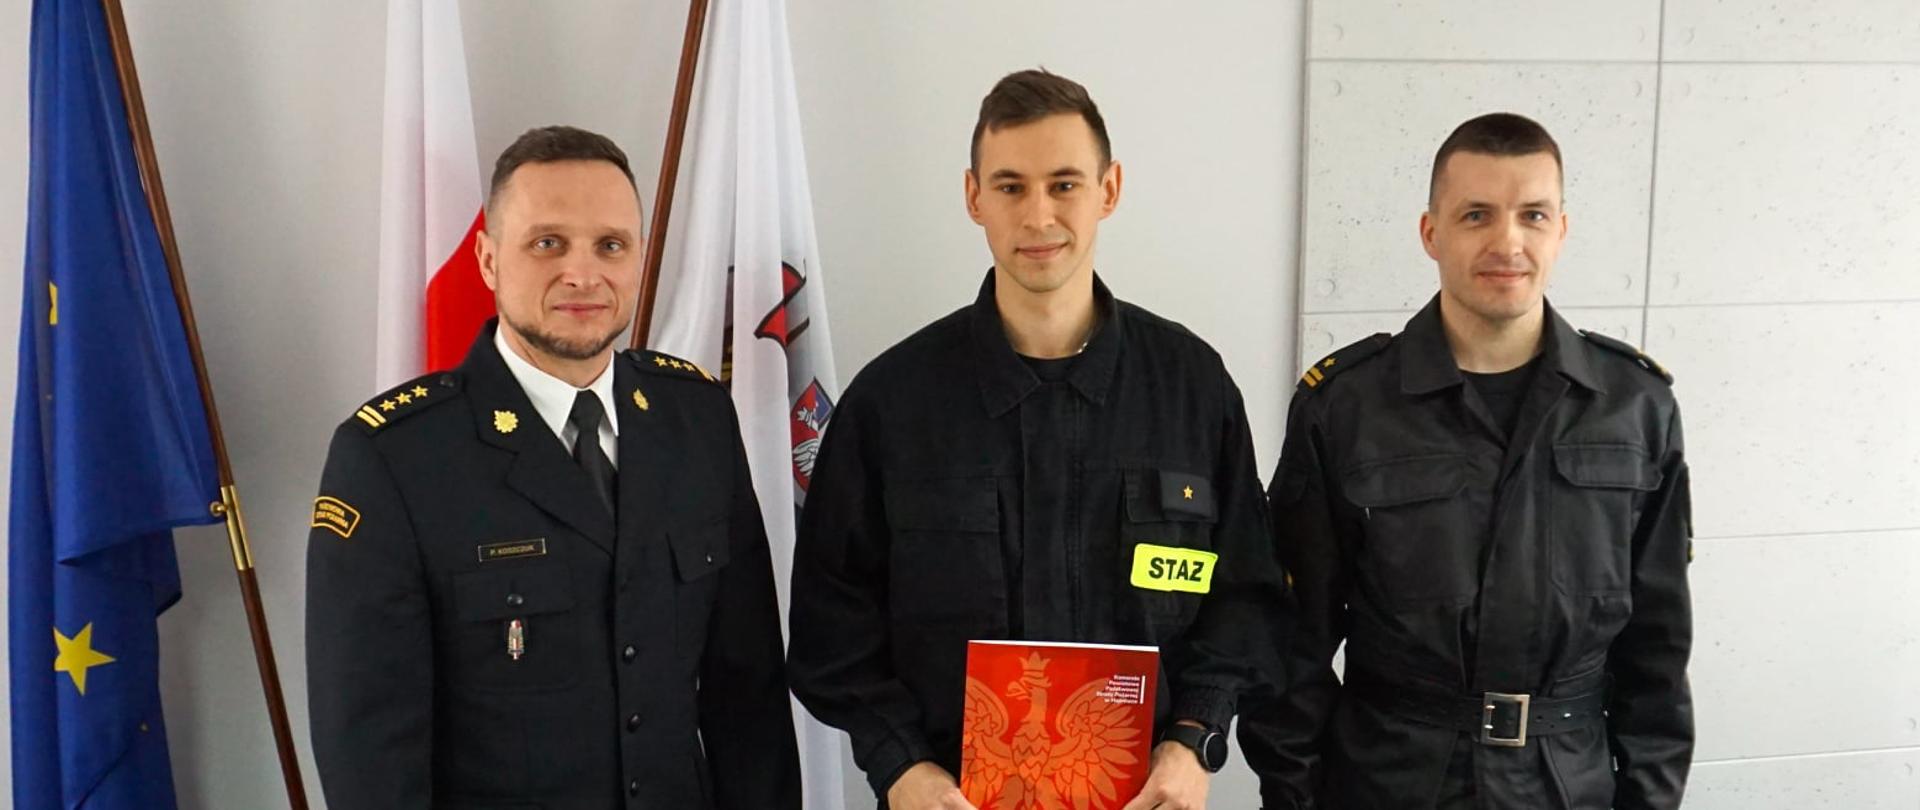 W pomieszczeniu na tle fag: Polski UE oraz flagi z logo PSP stoi 3 strażaków w czarnych mundurach.